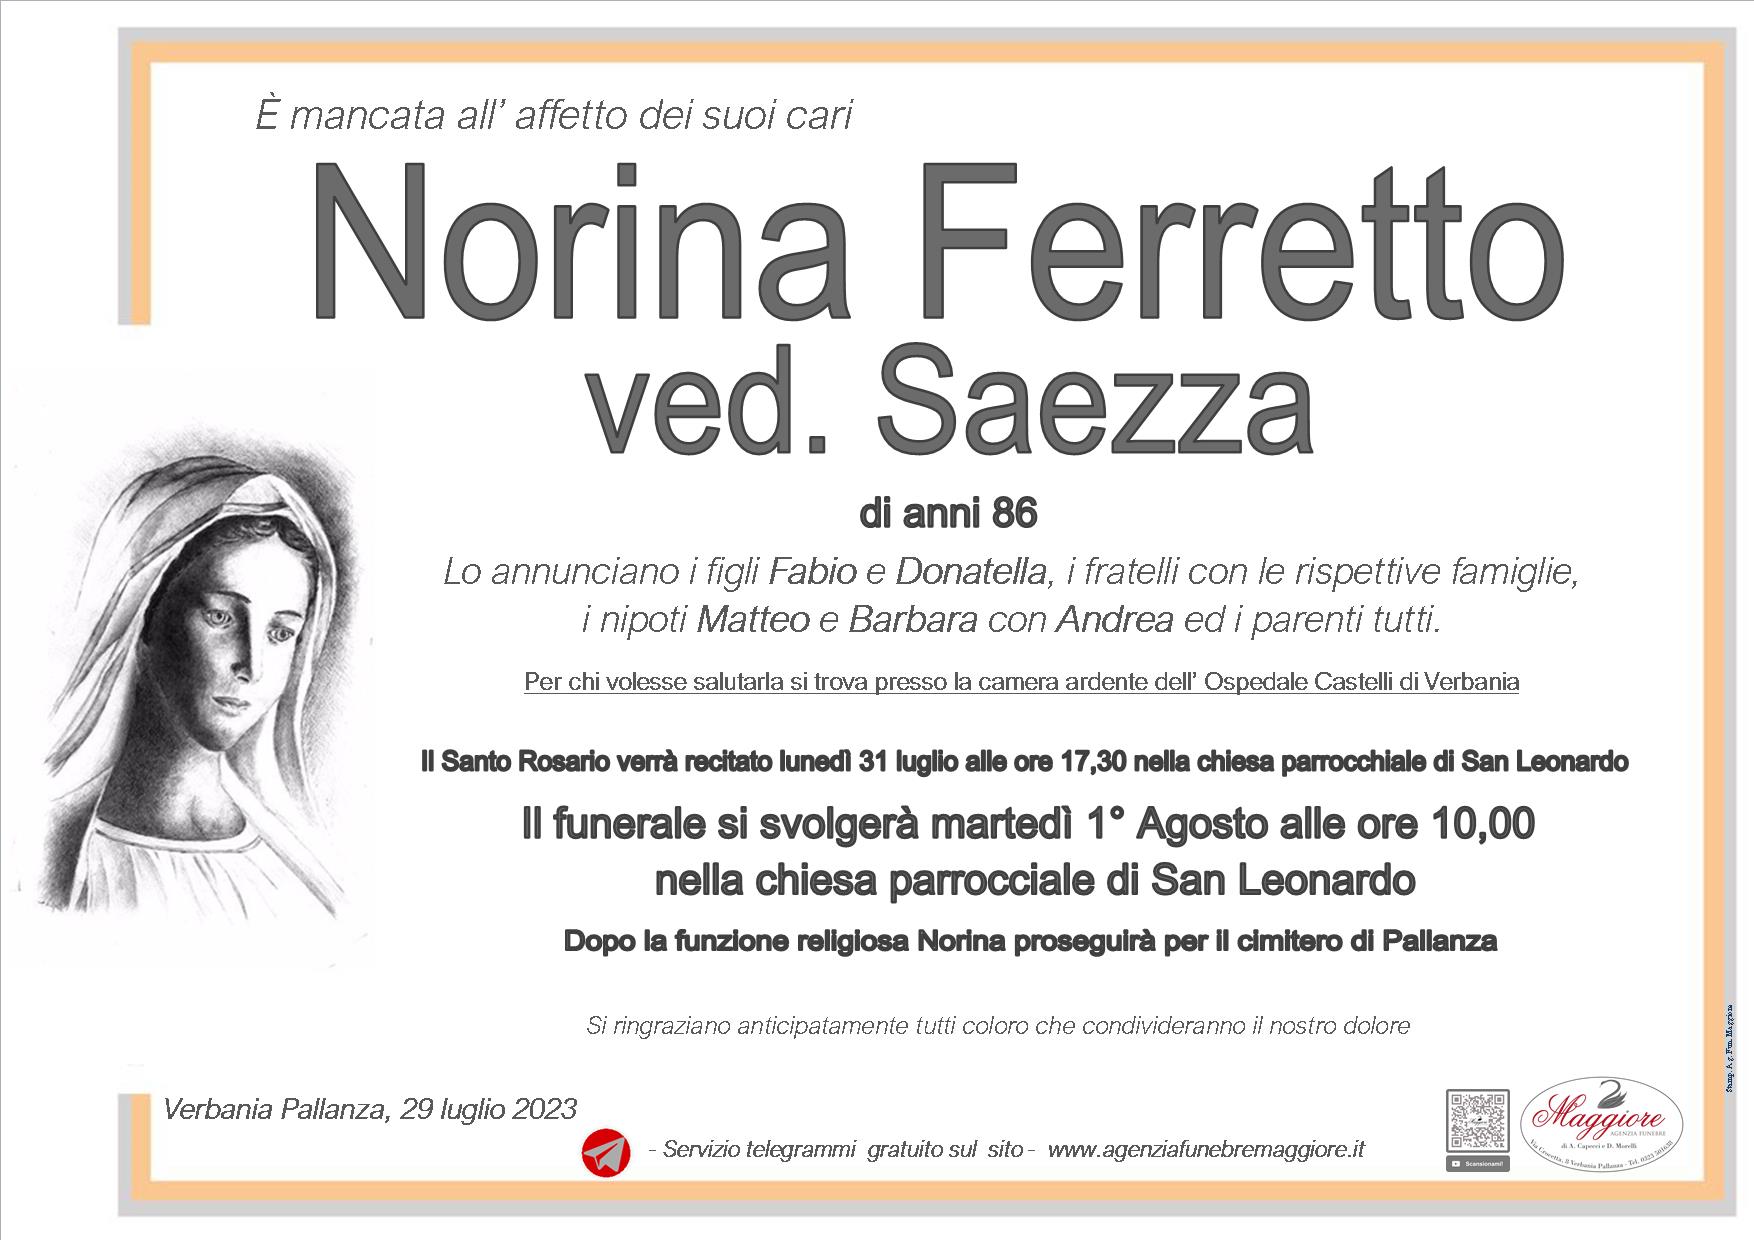 Norina Ferretto ved. Saezza